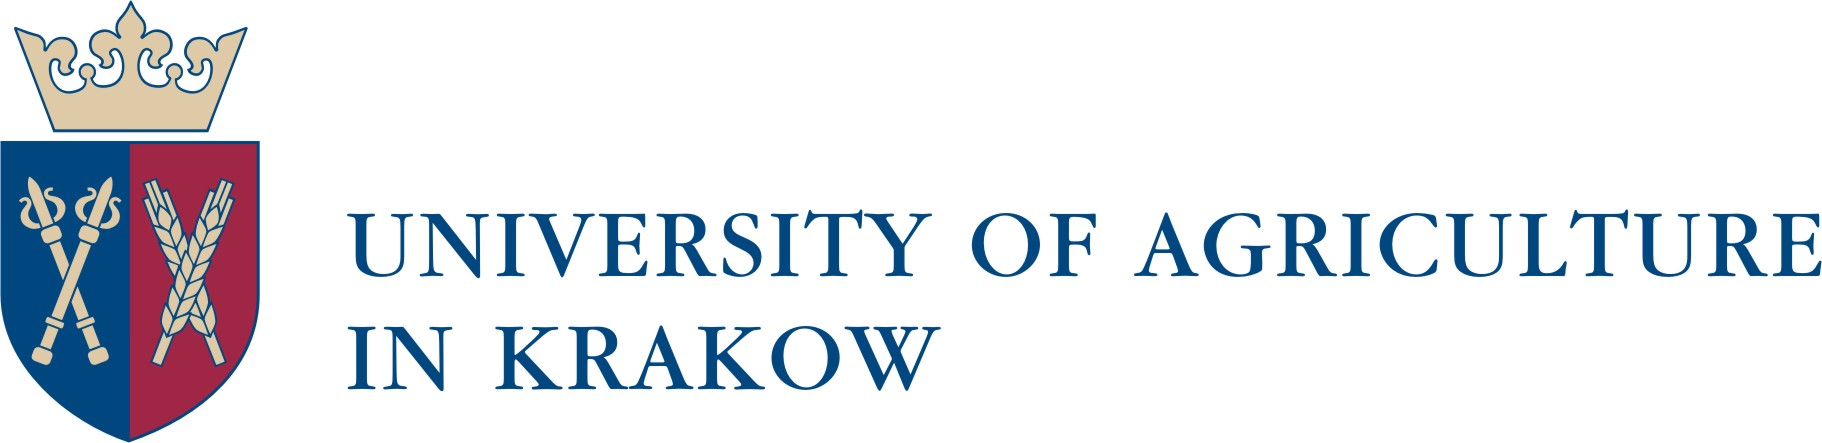 Logo UAK1